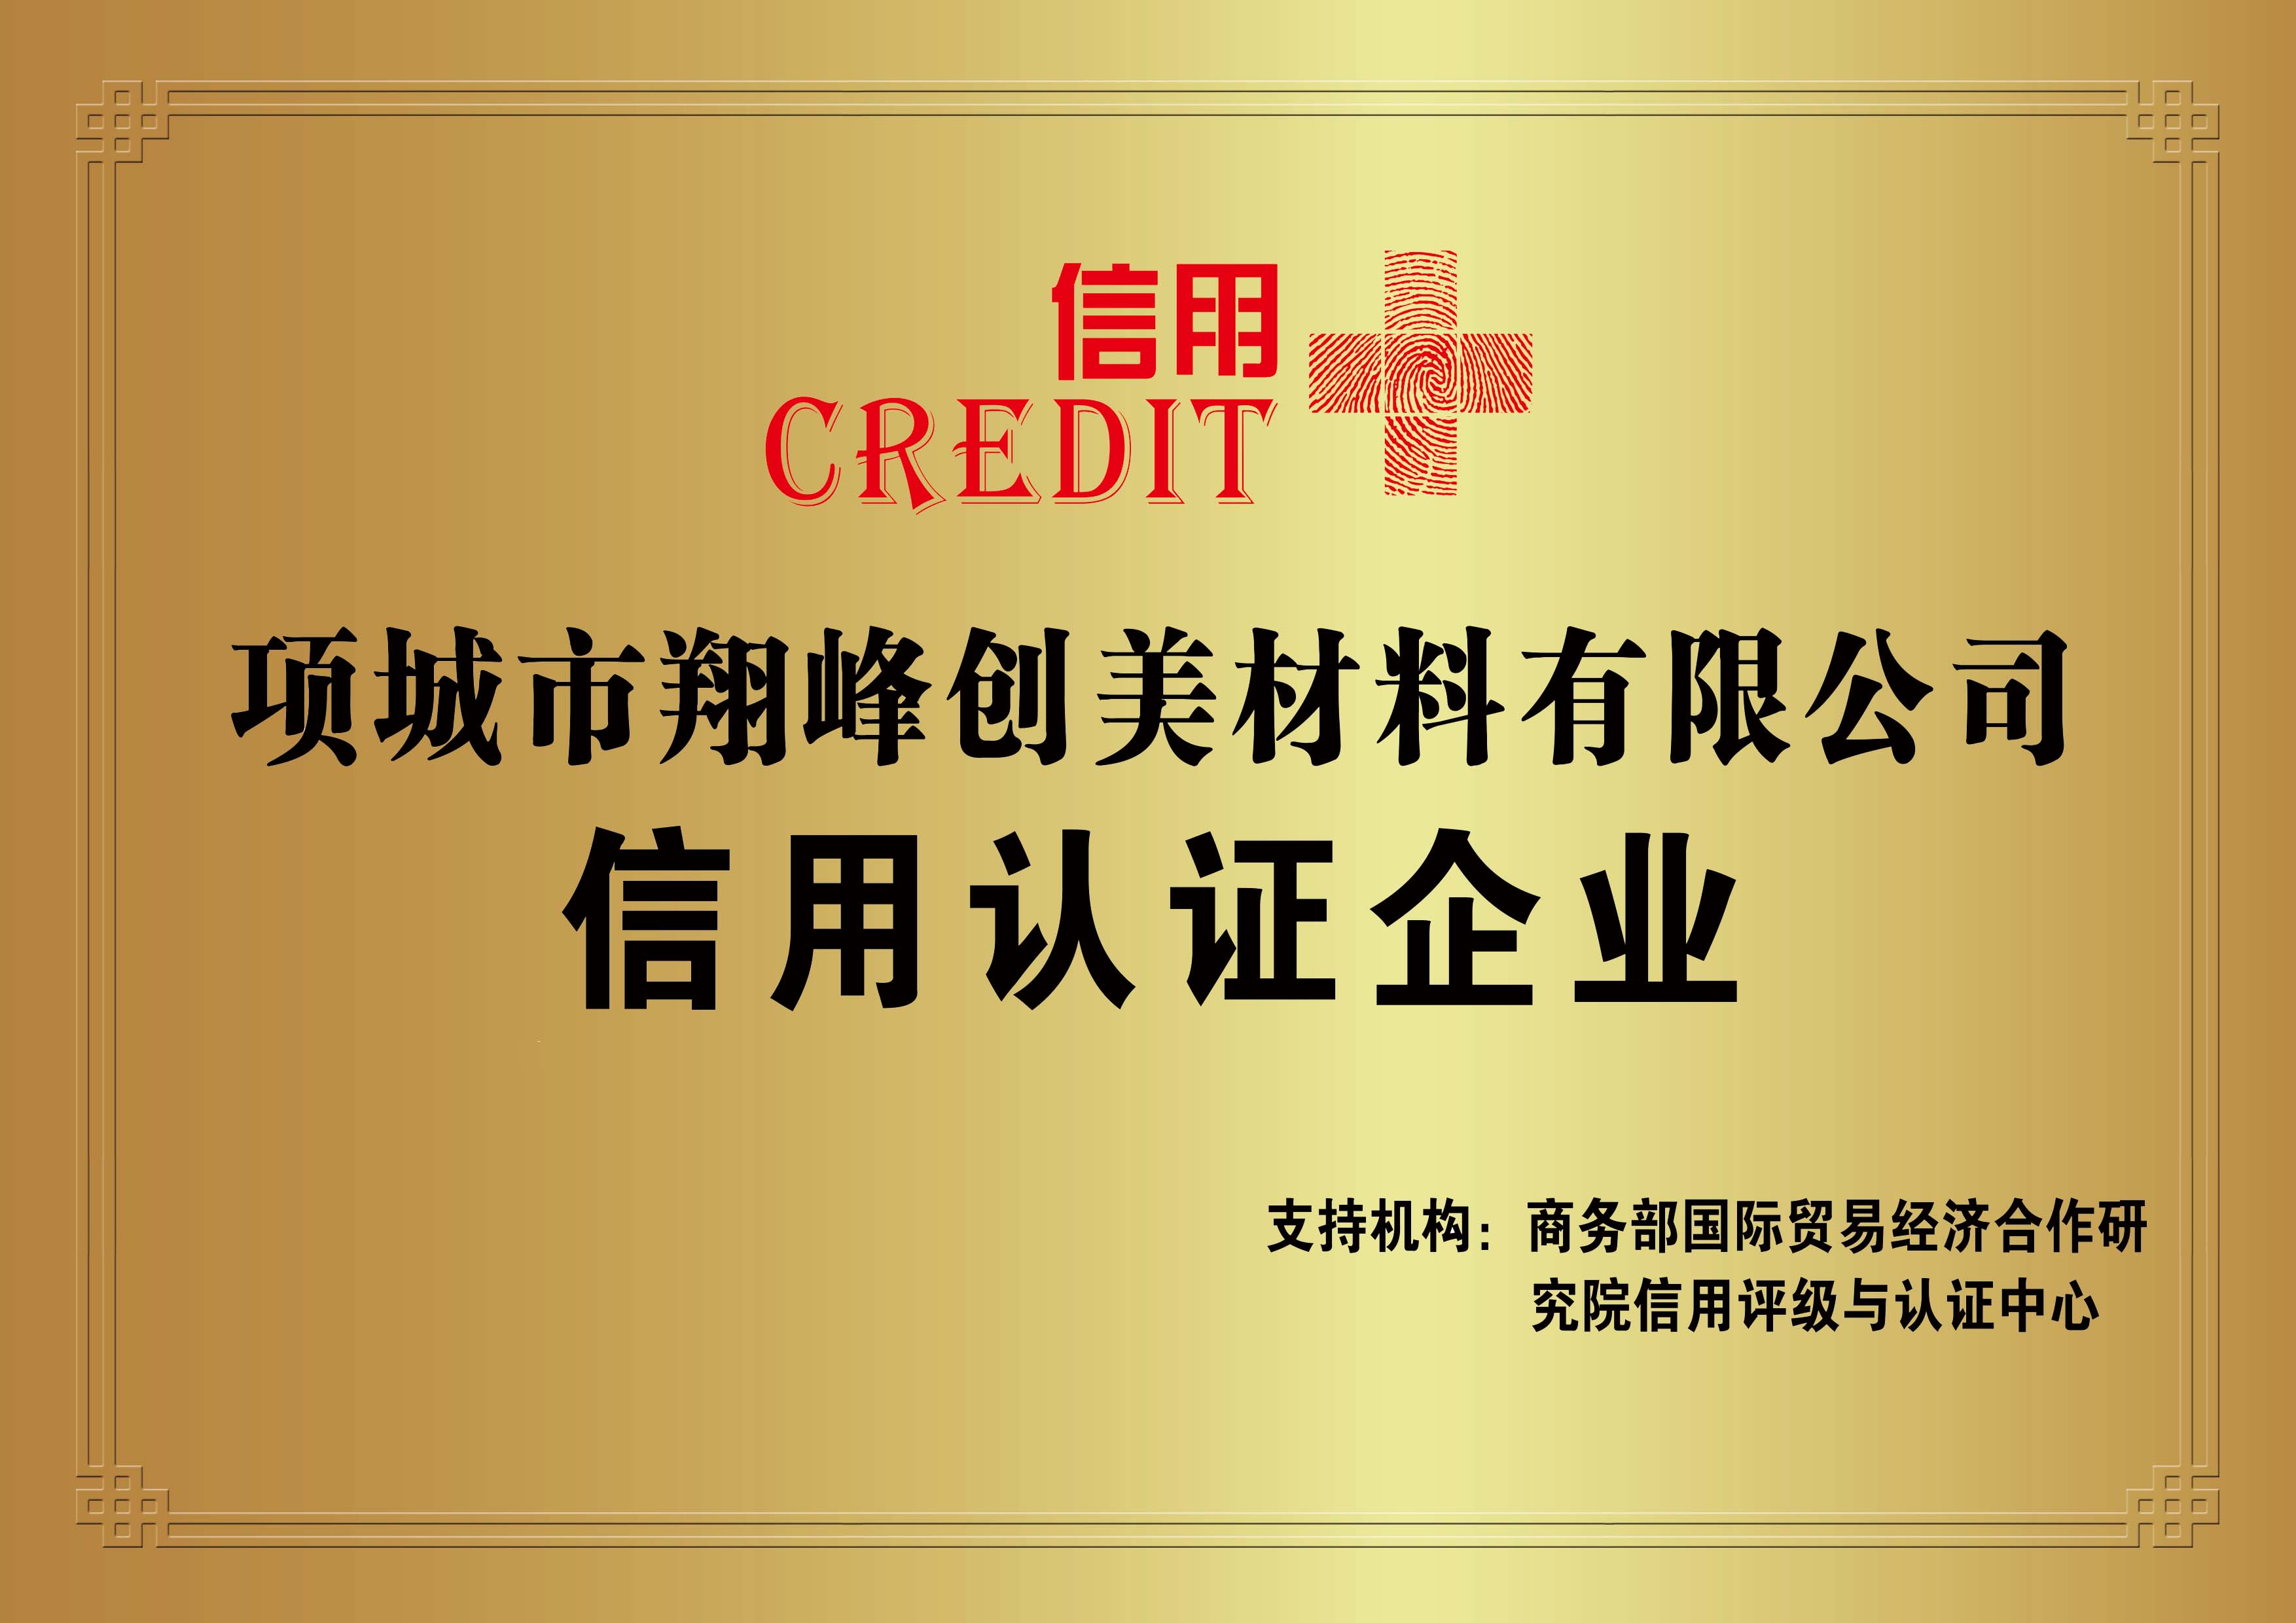 翔峰创美公司信用认证企业